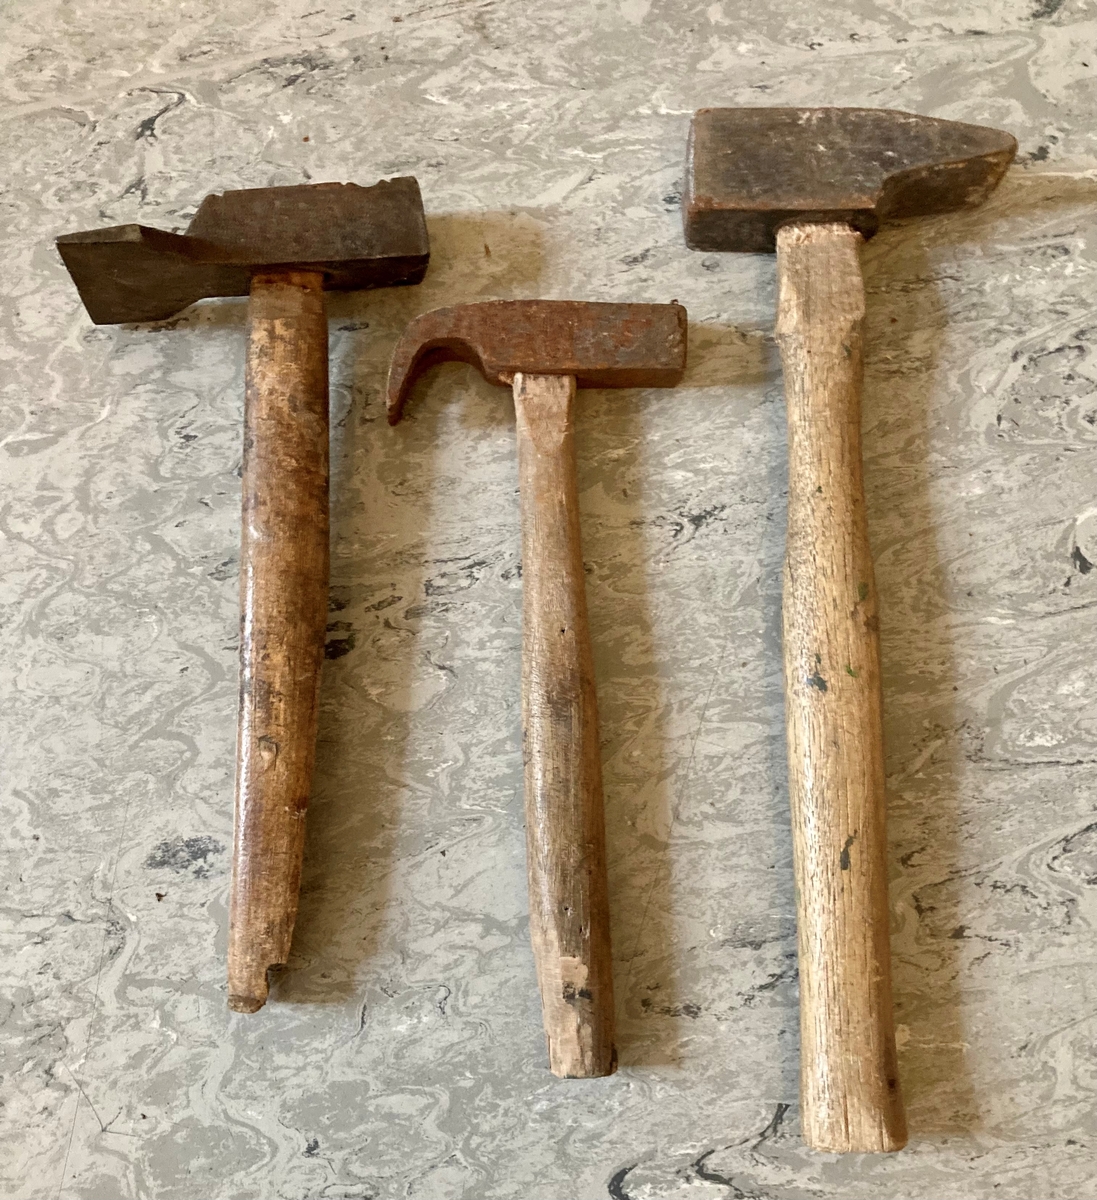 En samling av verktøy. Inneholder: en treklubbe, fem hammere i ulike størrelser, fire borvinner, en bunt med tau, en kjørner, en fil, en sponhøvel, en saks, to vinkelmålere.